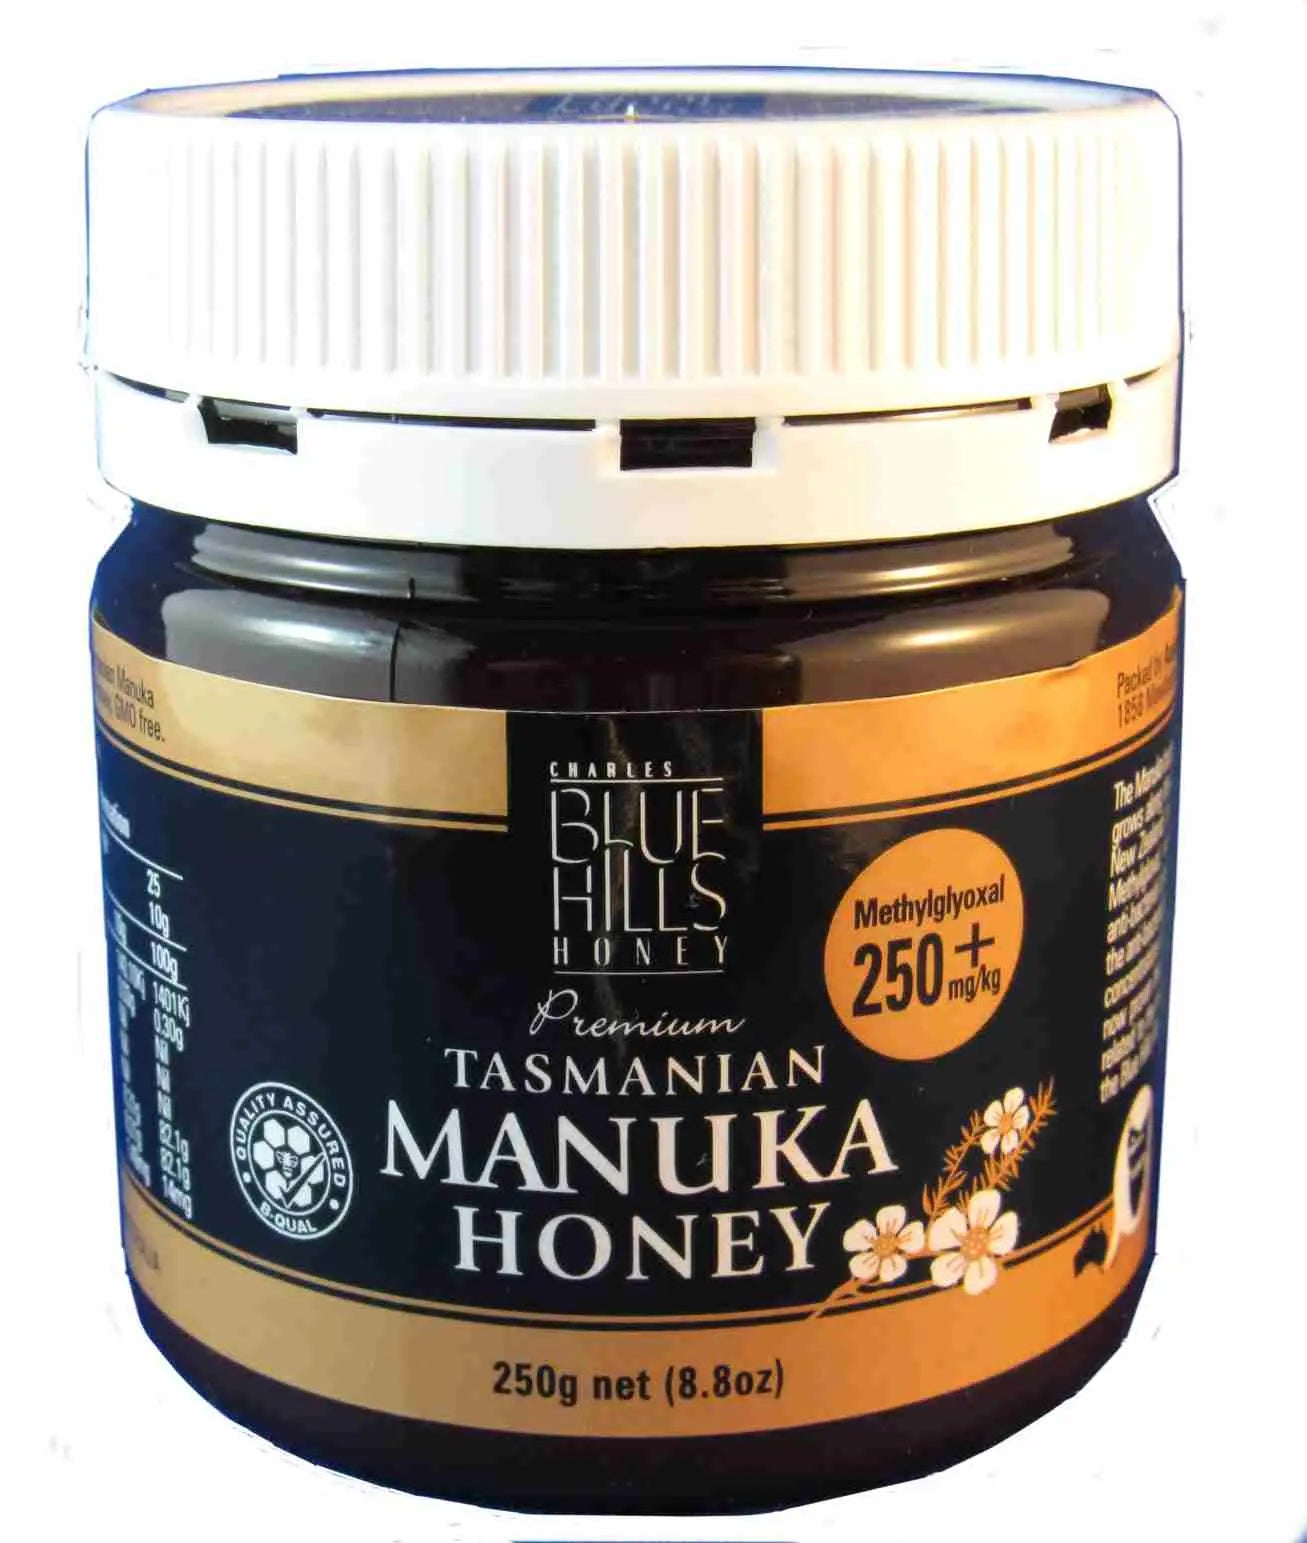 Manuka honey (250+), Blue Hills, Tasmanian